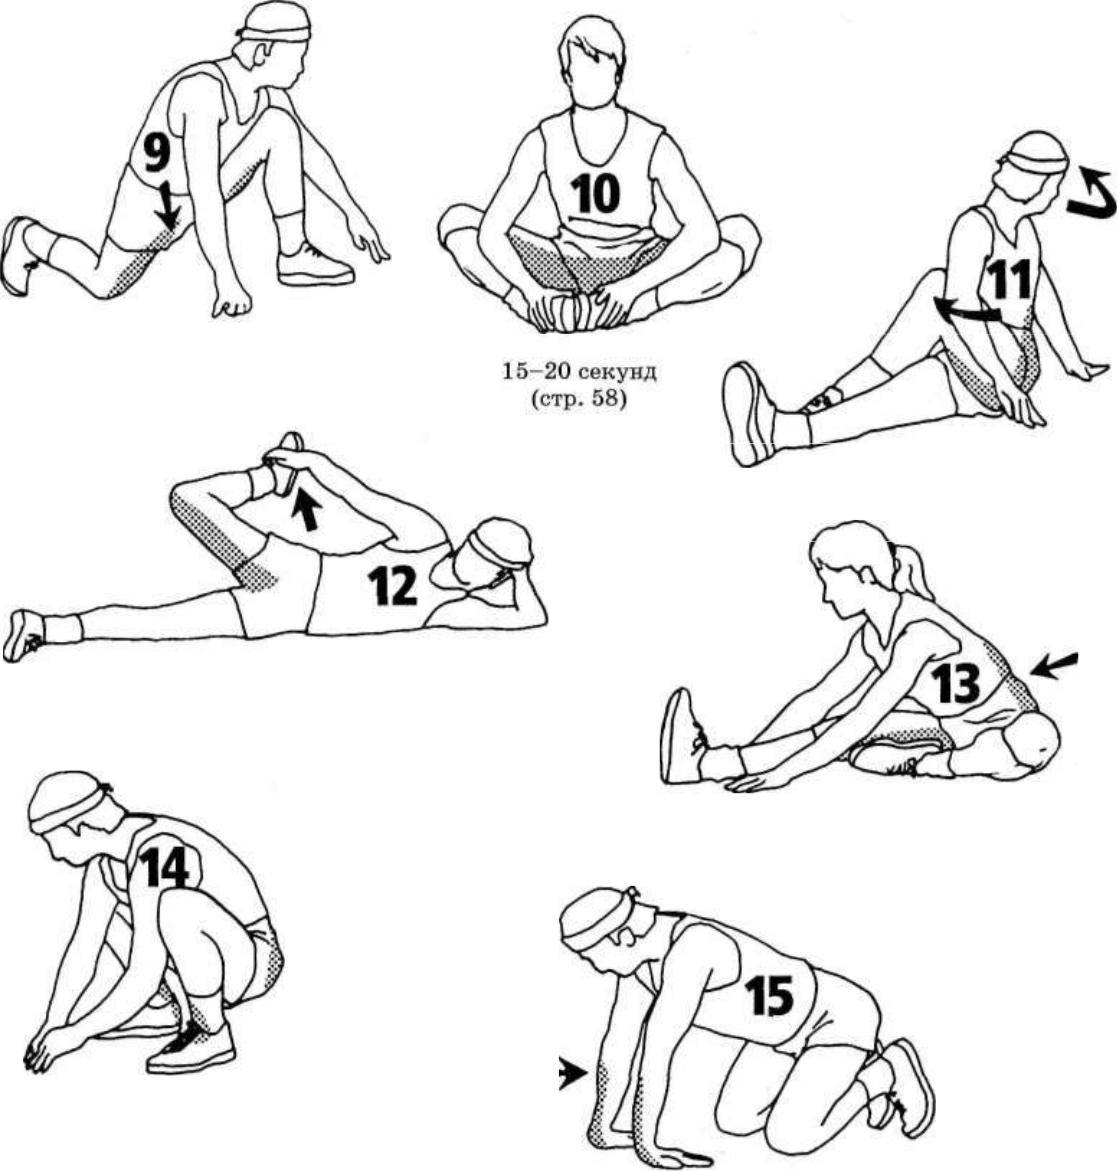 Комплекс упражнений, инструкции и программа тренировки для растяжки ног